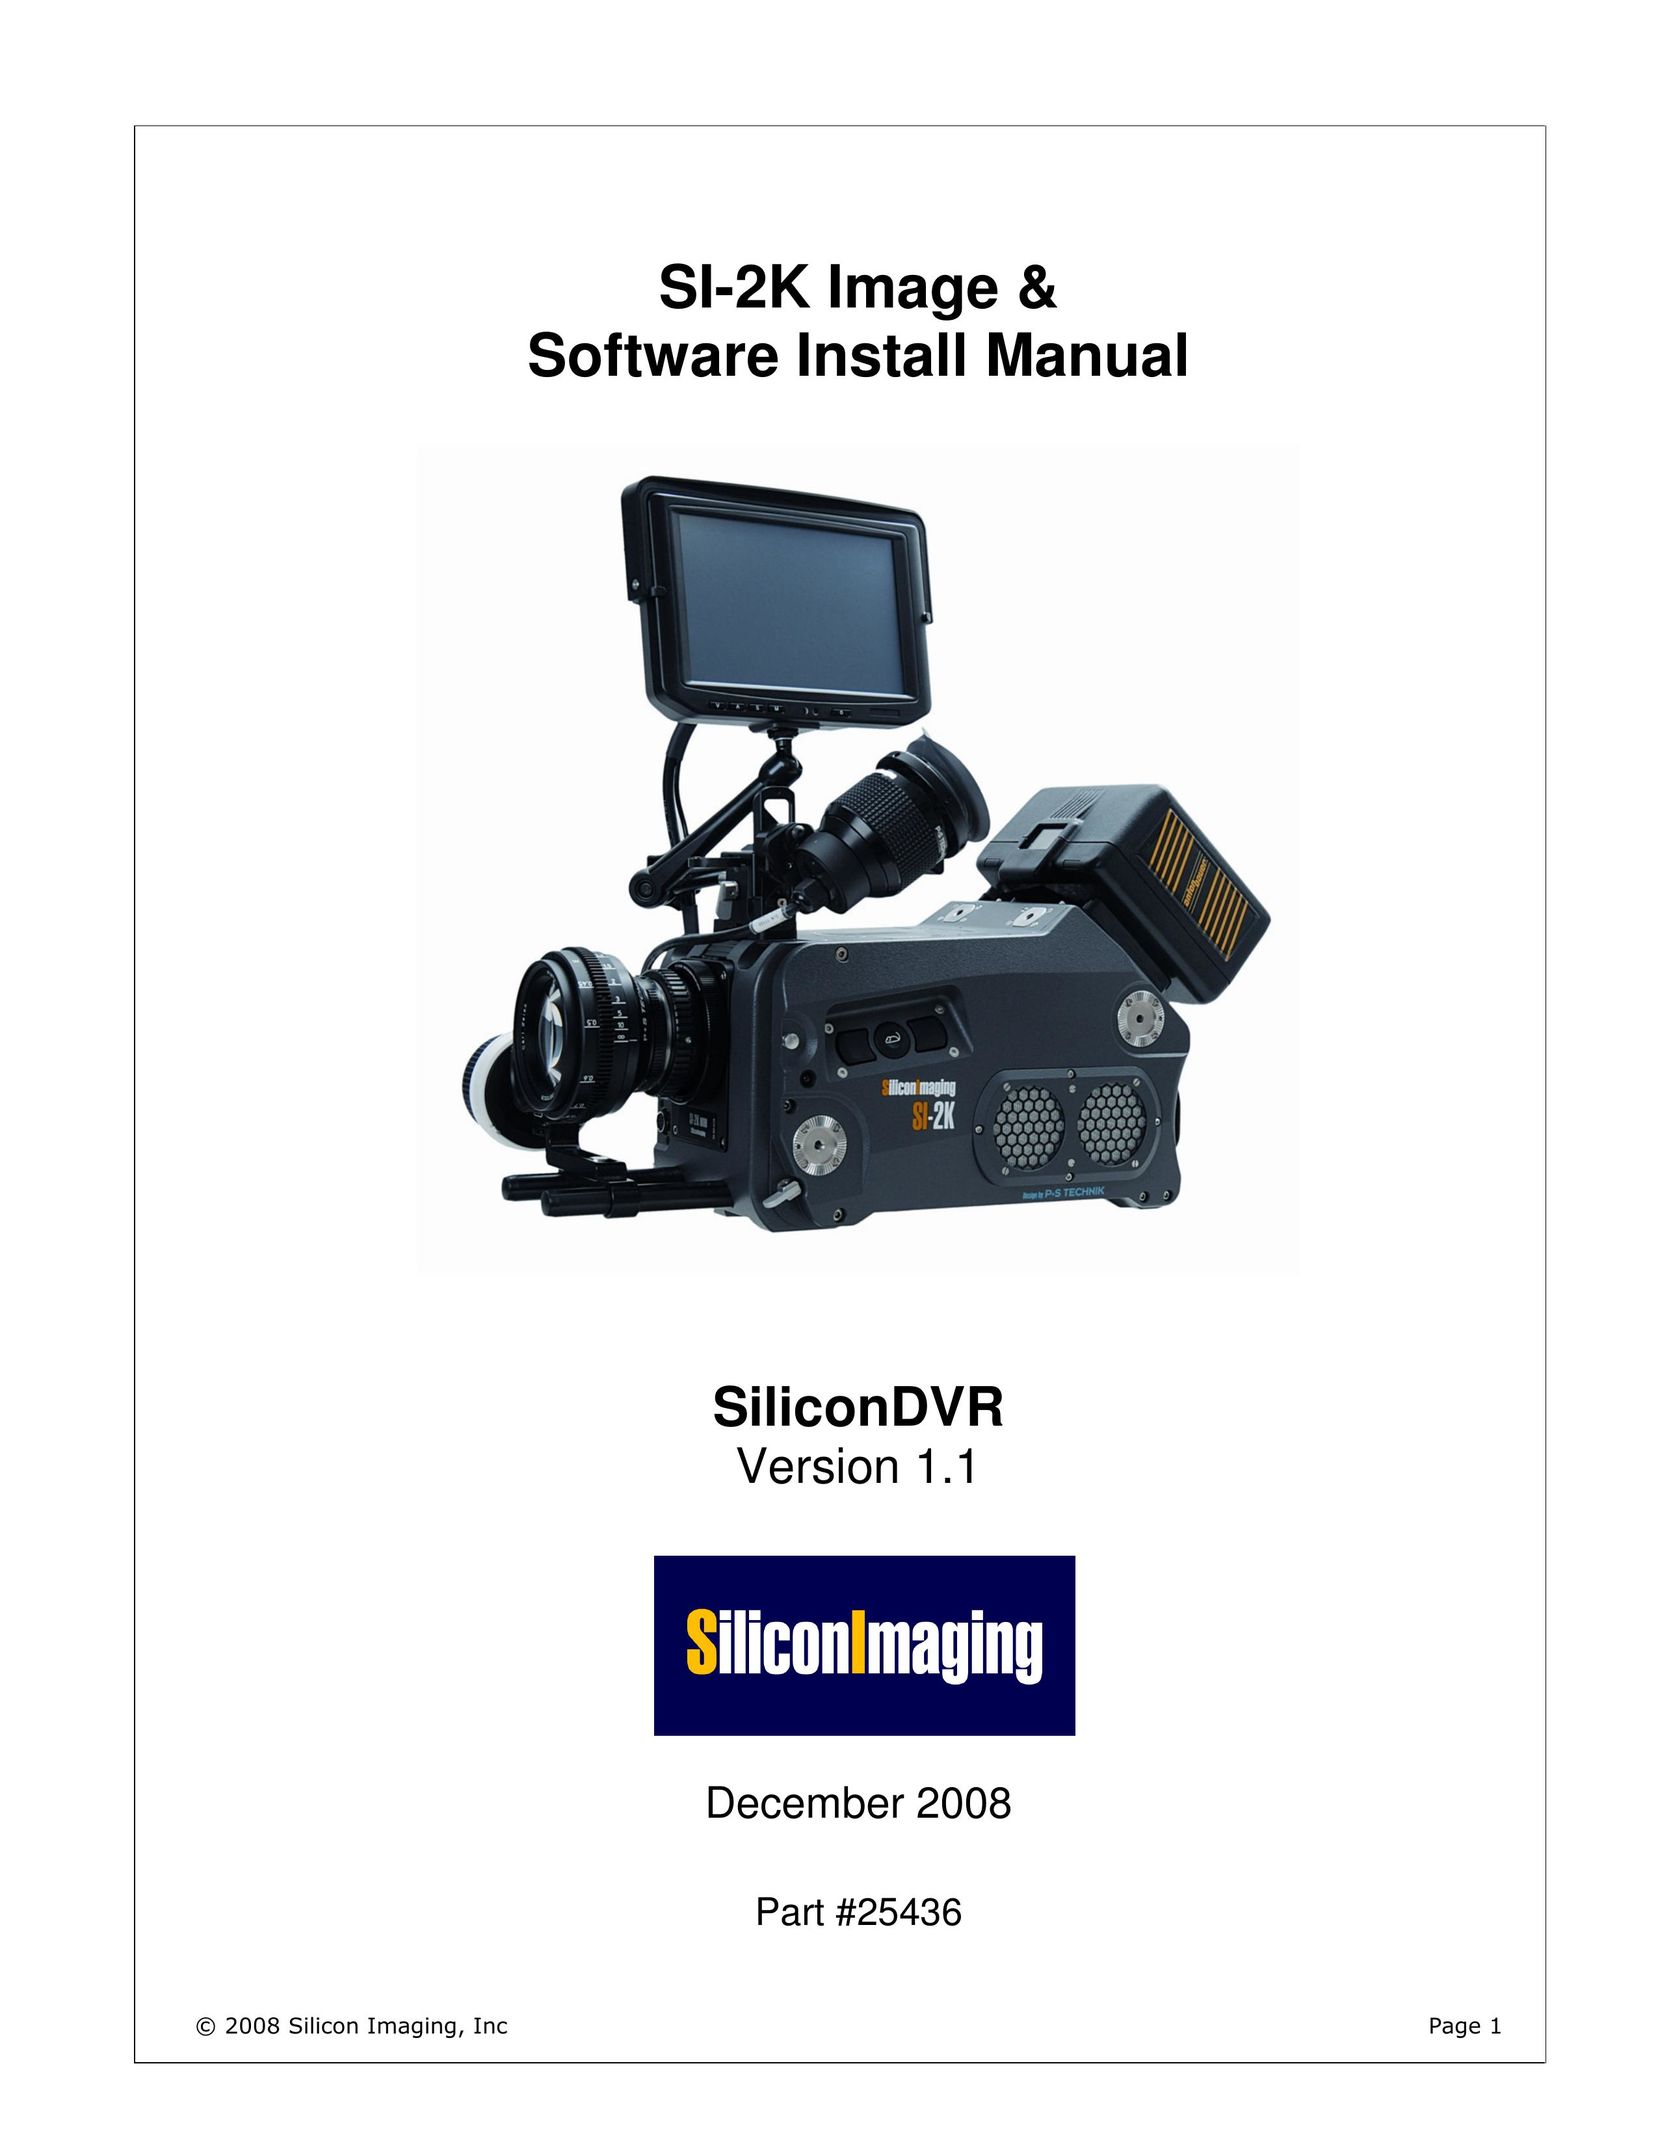 Silicon Image s1-2k DVR User Manual